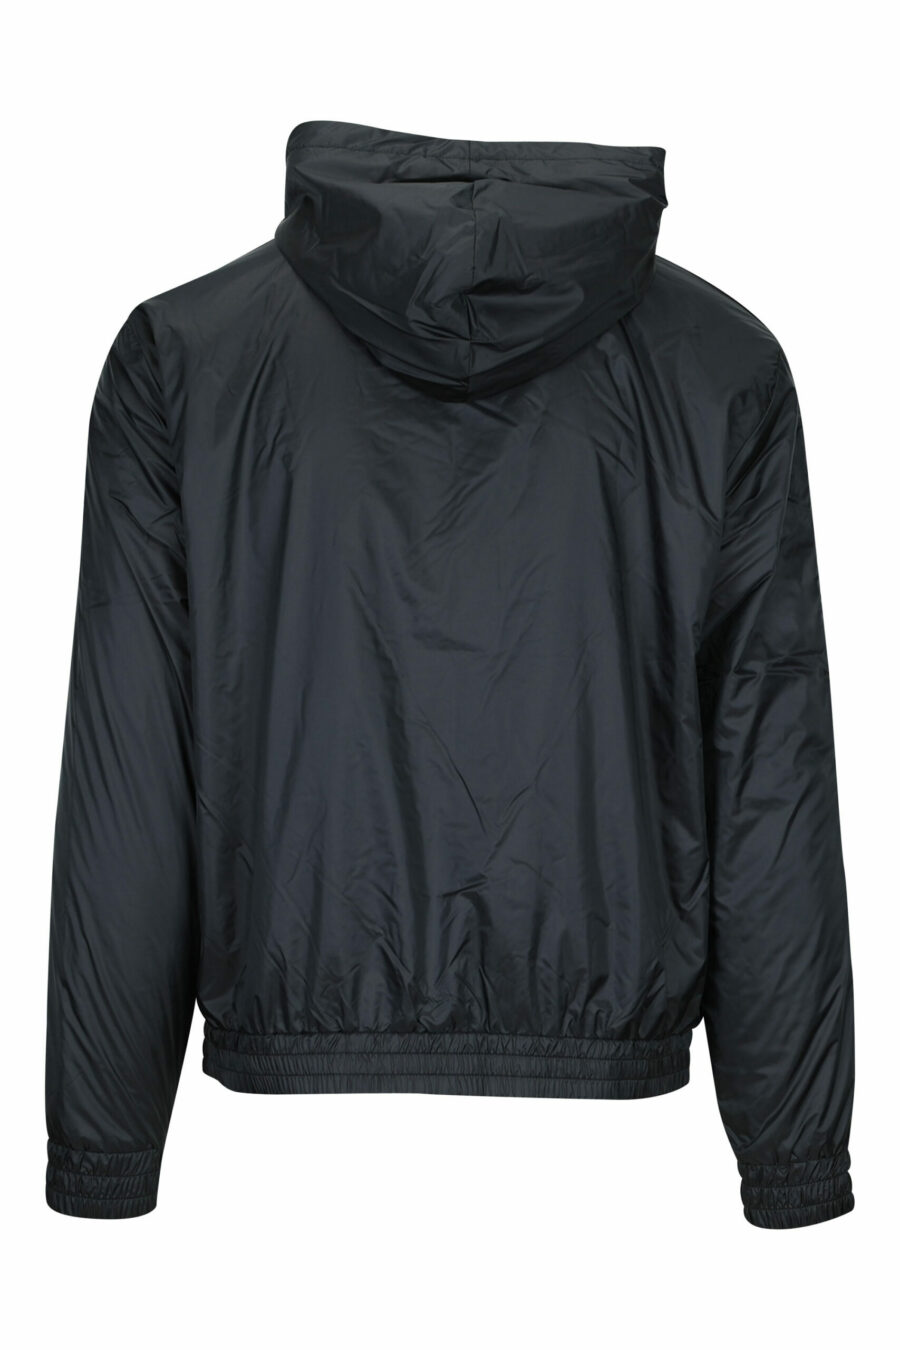 Veste imperméable noire avec capuche, lignes latérales blanches et logo "lux identity" - 8058947472567 1 à l'échelle